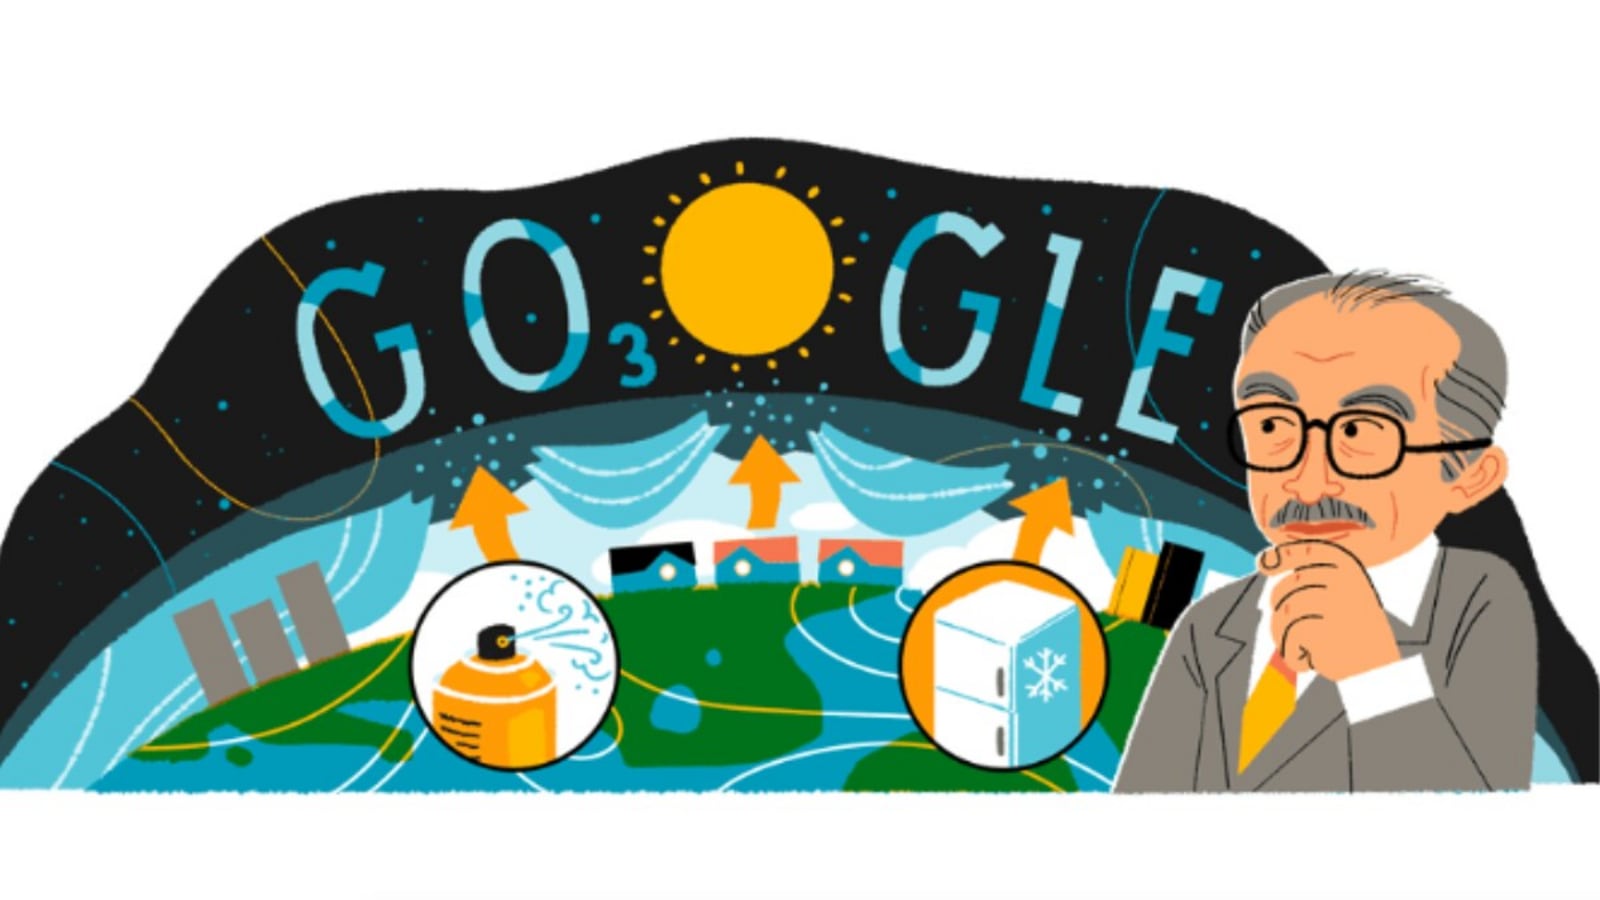 భూమి యొక్క ఓజోన్ పొరను రక్షించడంలో సహాయపడిన మారియో మోలినా పుట్టినరోజును Google Doodle జరుపుకుంటుంది